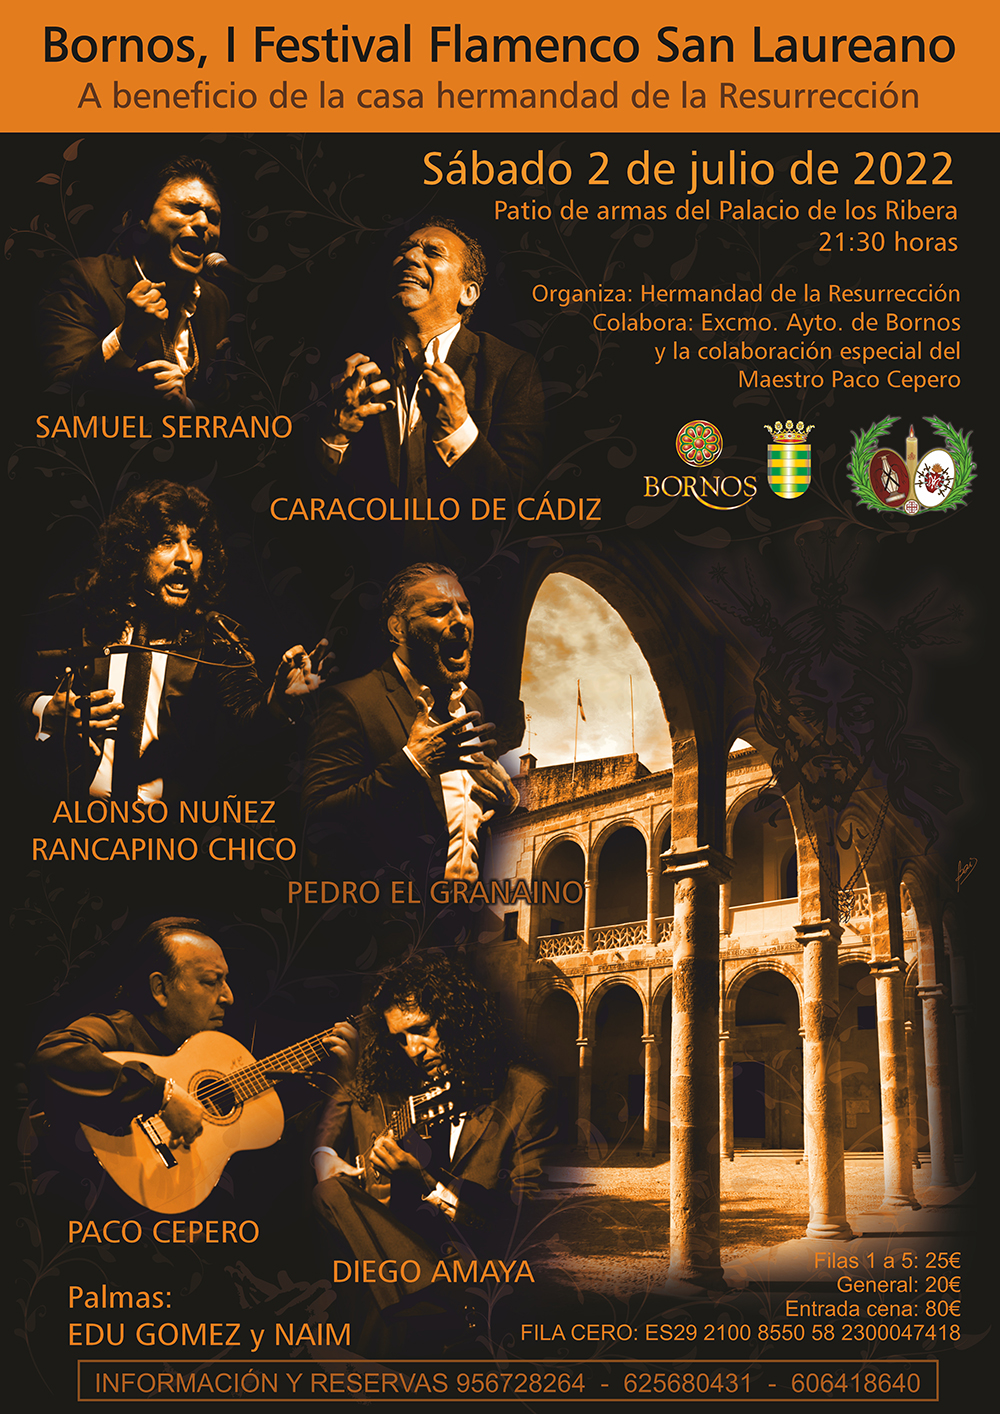 Bornos, Festival Flamenco San Laureano